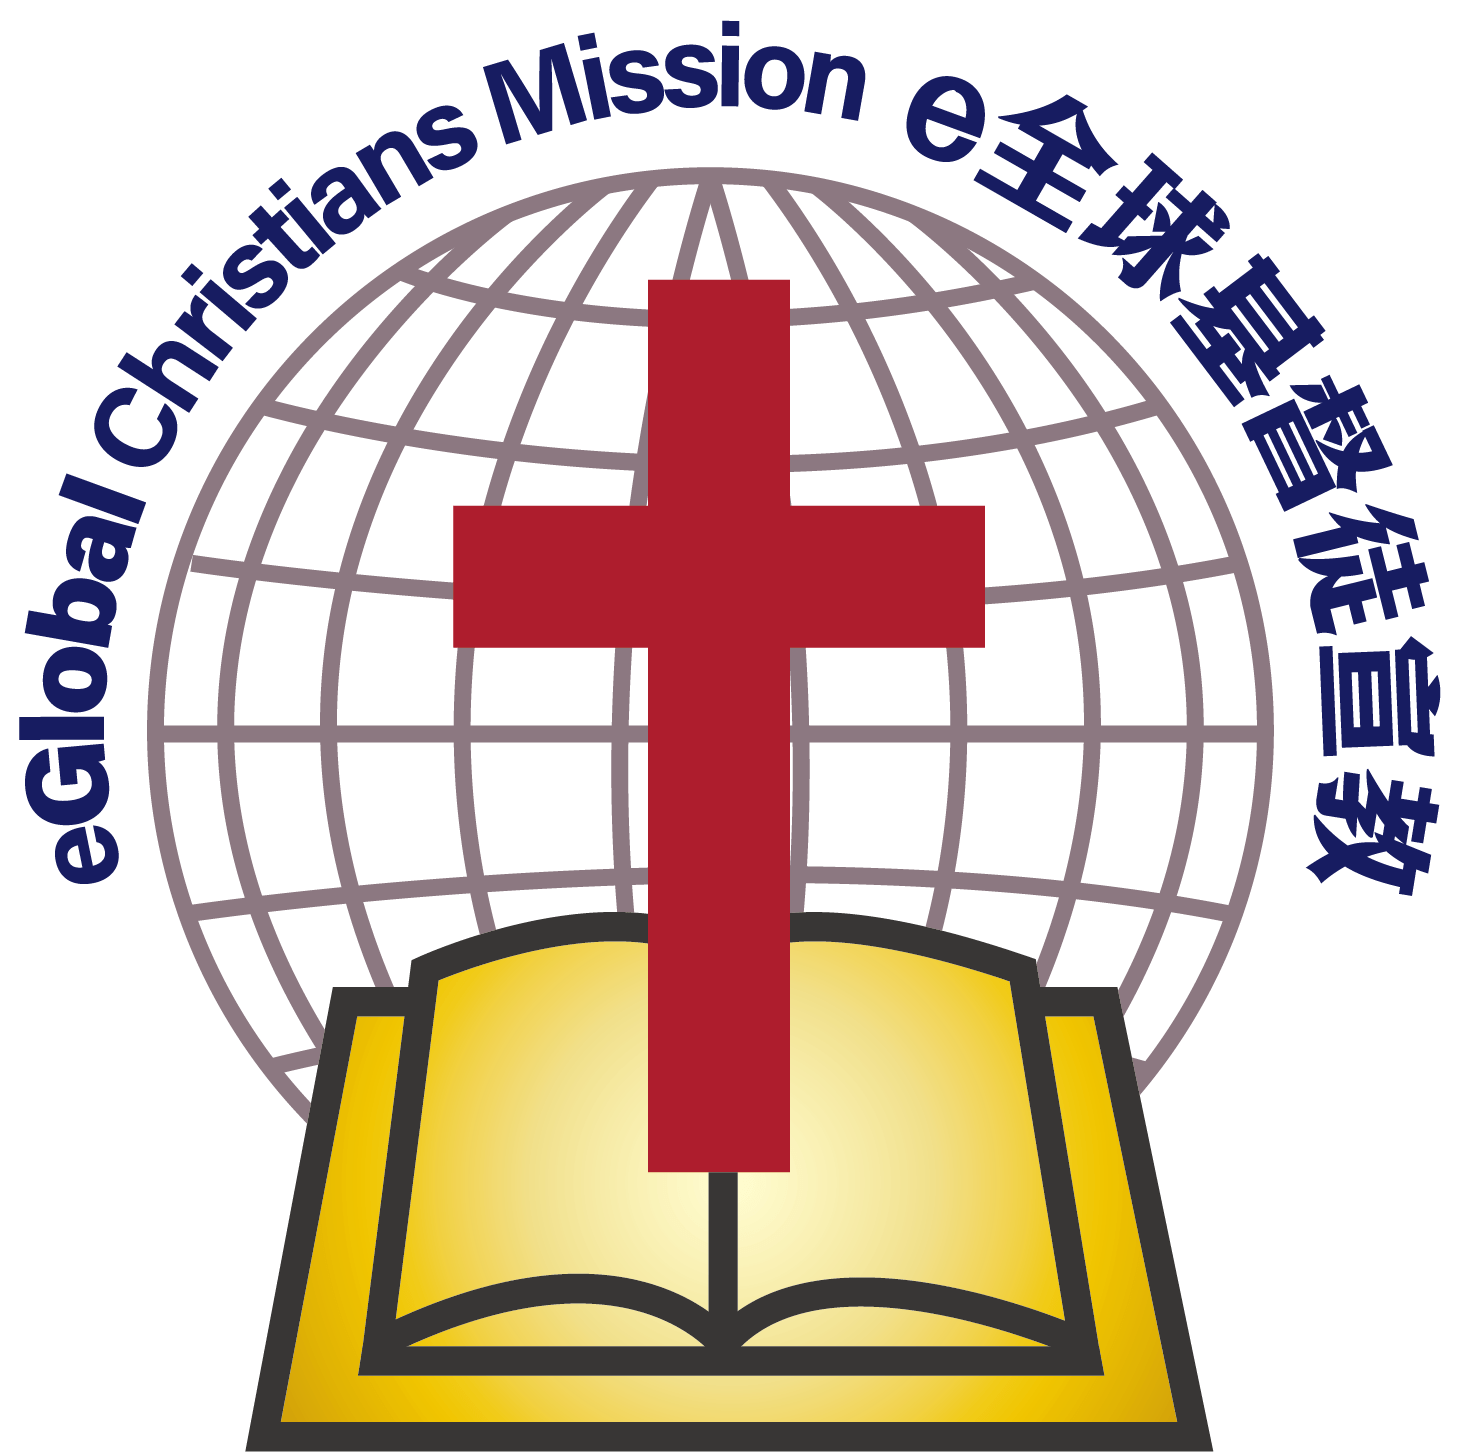 eGlobal Christians Mission logo